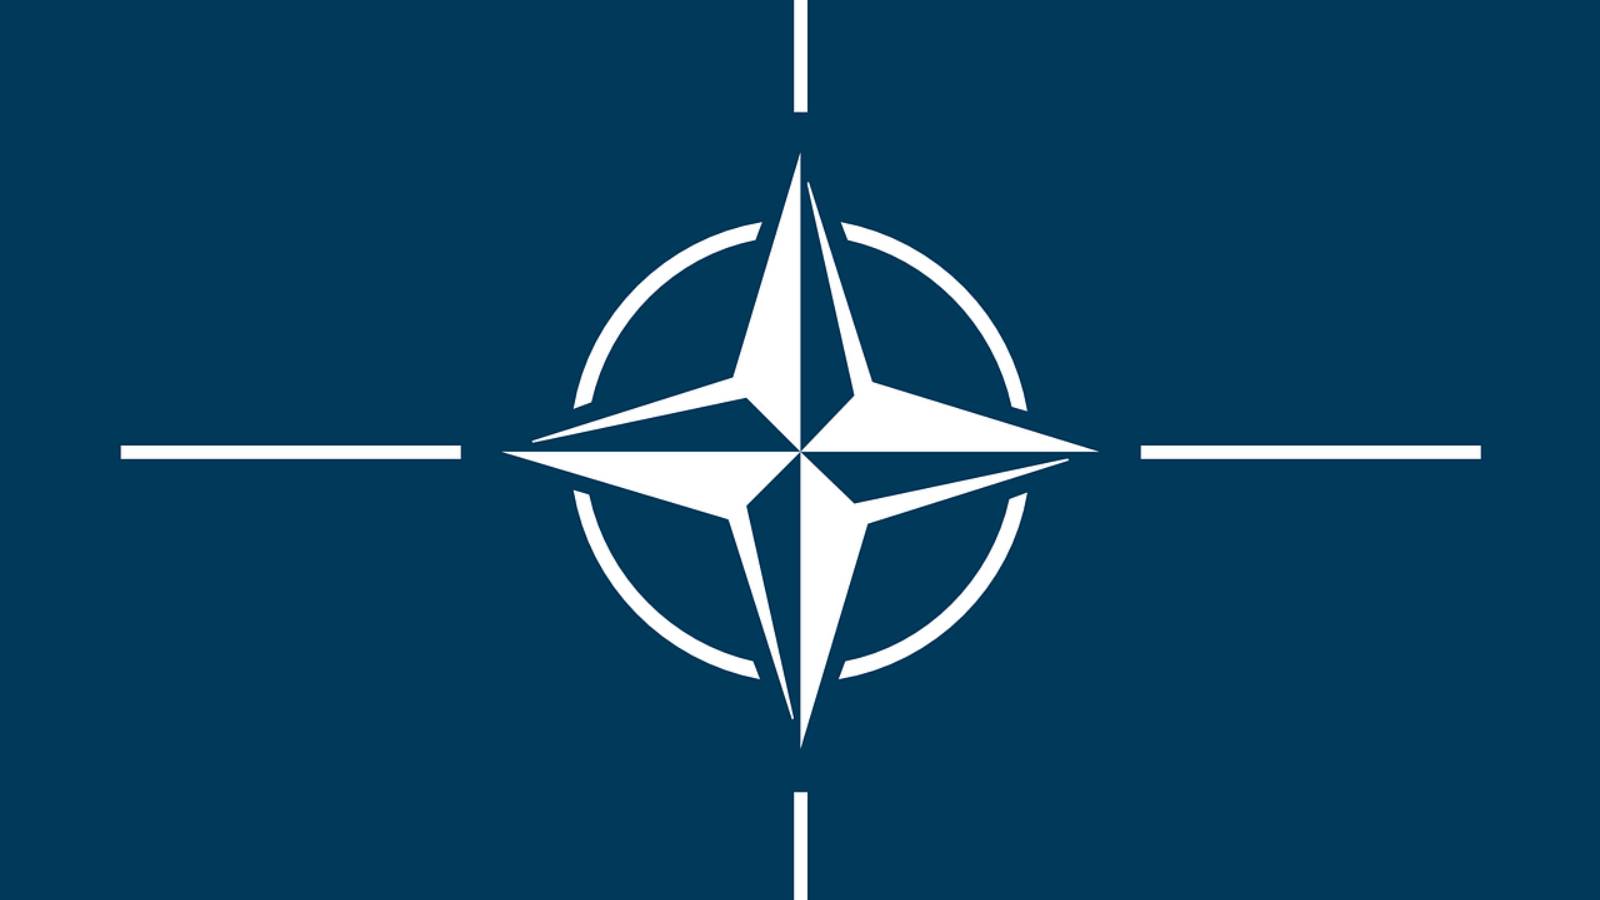 Finland zal een aanvraag indienen om lid te worden van de NAVO